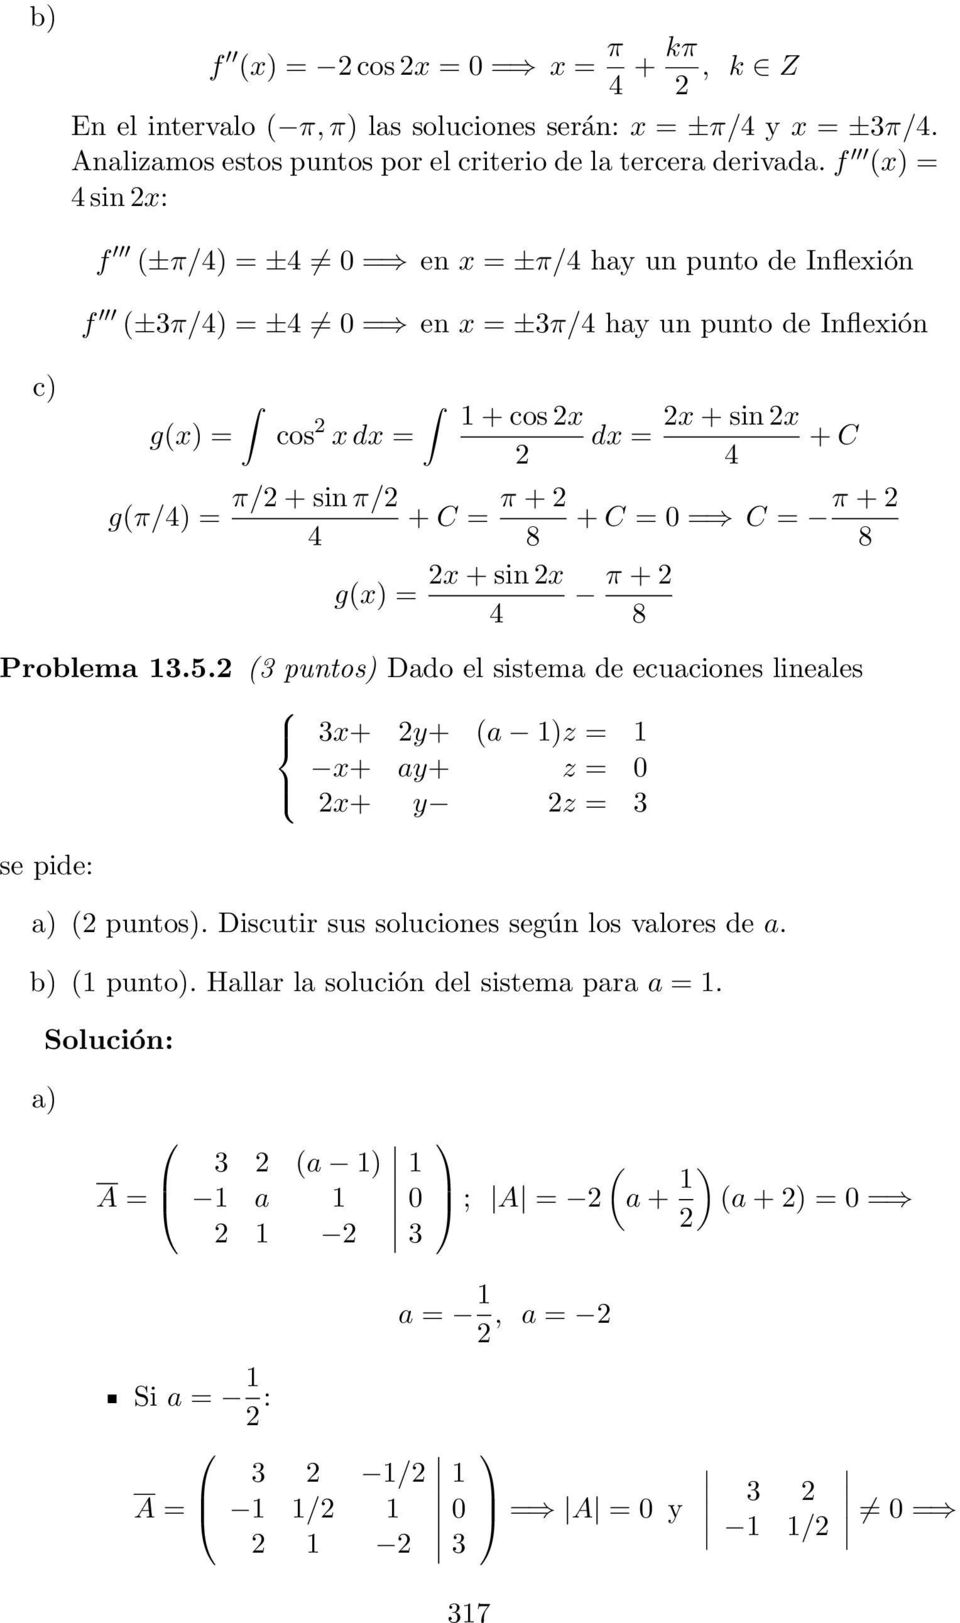 x + sin x g(x) = 4 dx = x + sin x 4 + C + C = 0 = C = π + 8 π + 8 Problema 13.5. (3 puntos) Dado el sistema de ecuaciones lineales 3x+ y+ (a 1)z = 1 x+ ay+ z = 0 x+ y z = 3 ( puntos).